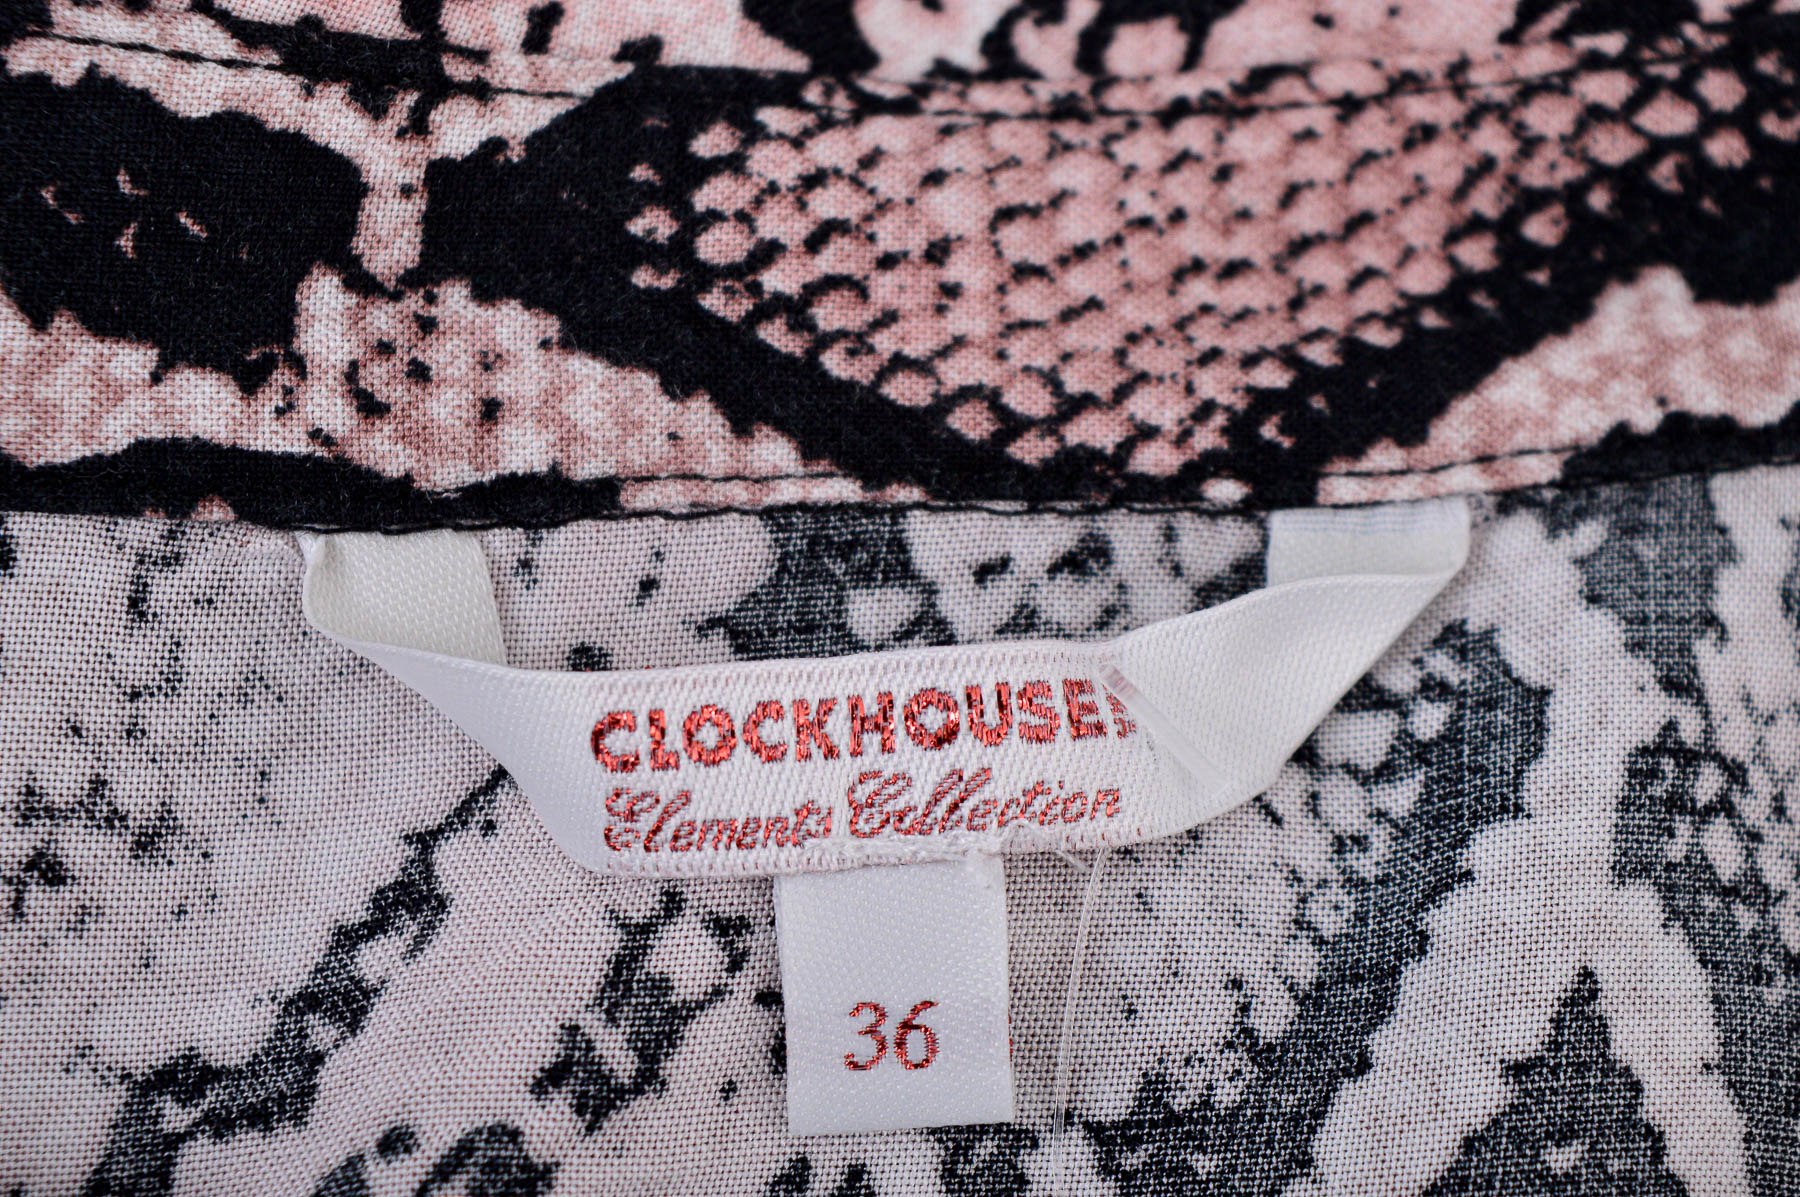 Women's shirt - Clockhouse - 2